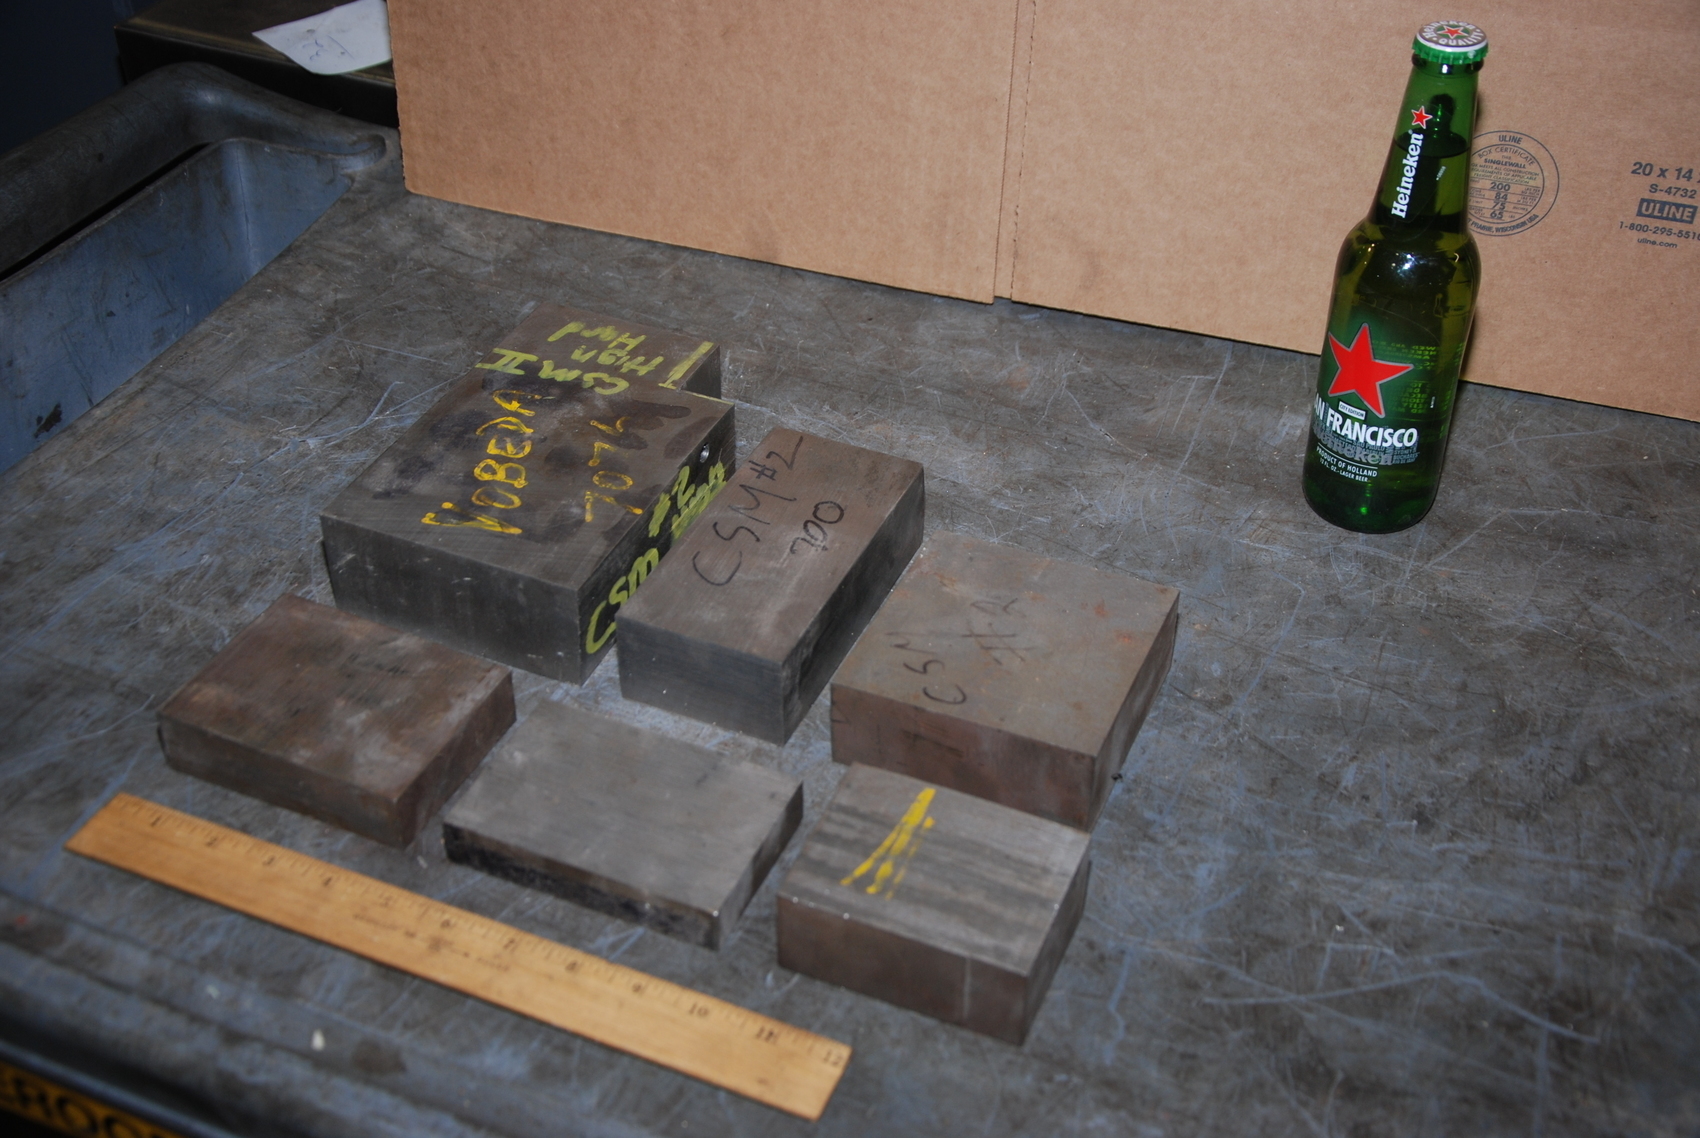 Lot of 6 steel Rectangular Bars for blacksmith anvil,47 lbs